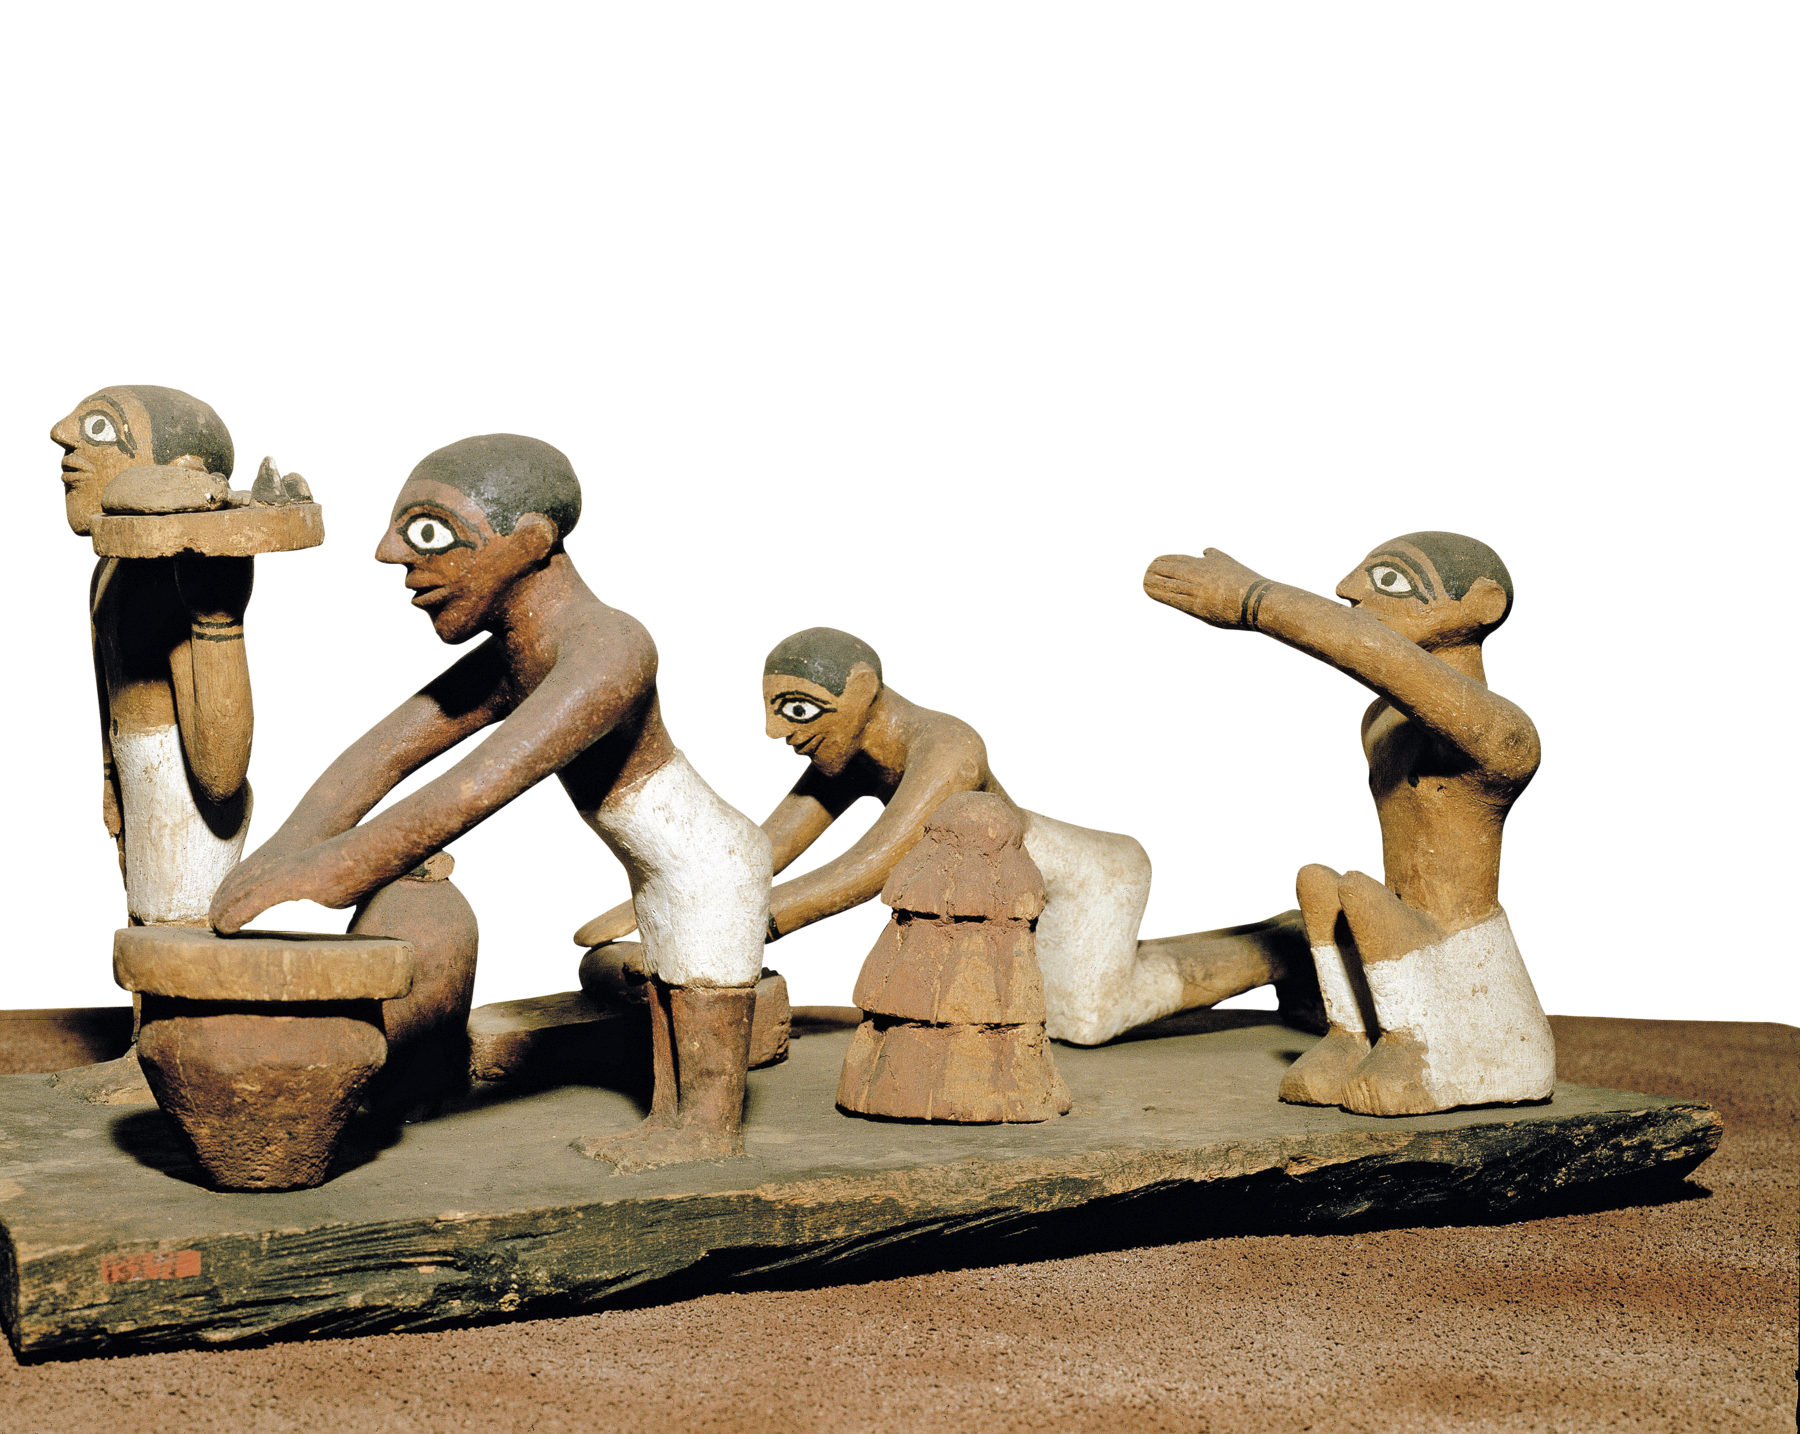 Escultura. Objeto de madeira representando quatro homens vestindo tecidos brancos ao redor de suas cinturas e peitos desnudos. Dois deles estão em pé, um ajoelhado e outro sentado com um dos braços erguido.